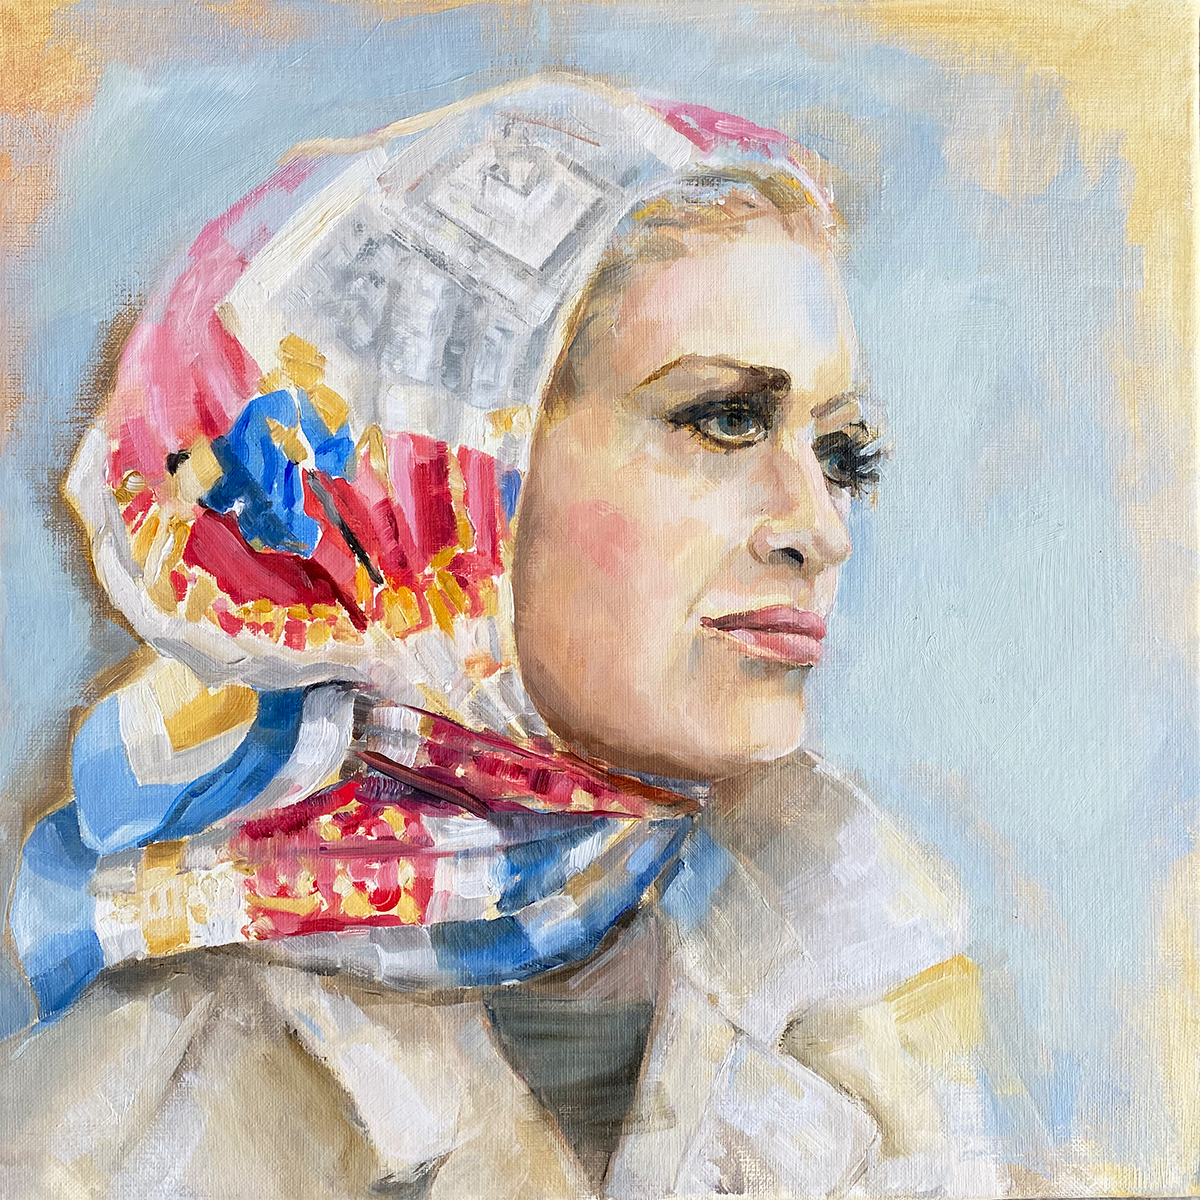 Schilderij van  vrouw met rood, wit, blauw, gouden sjaal tegen een lichtblauwe achtergrond